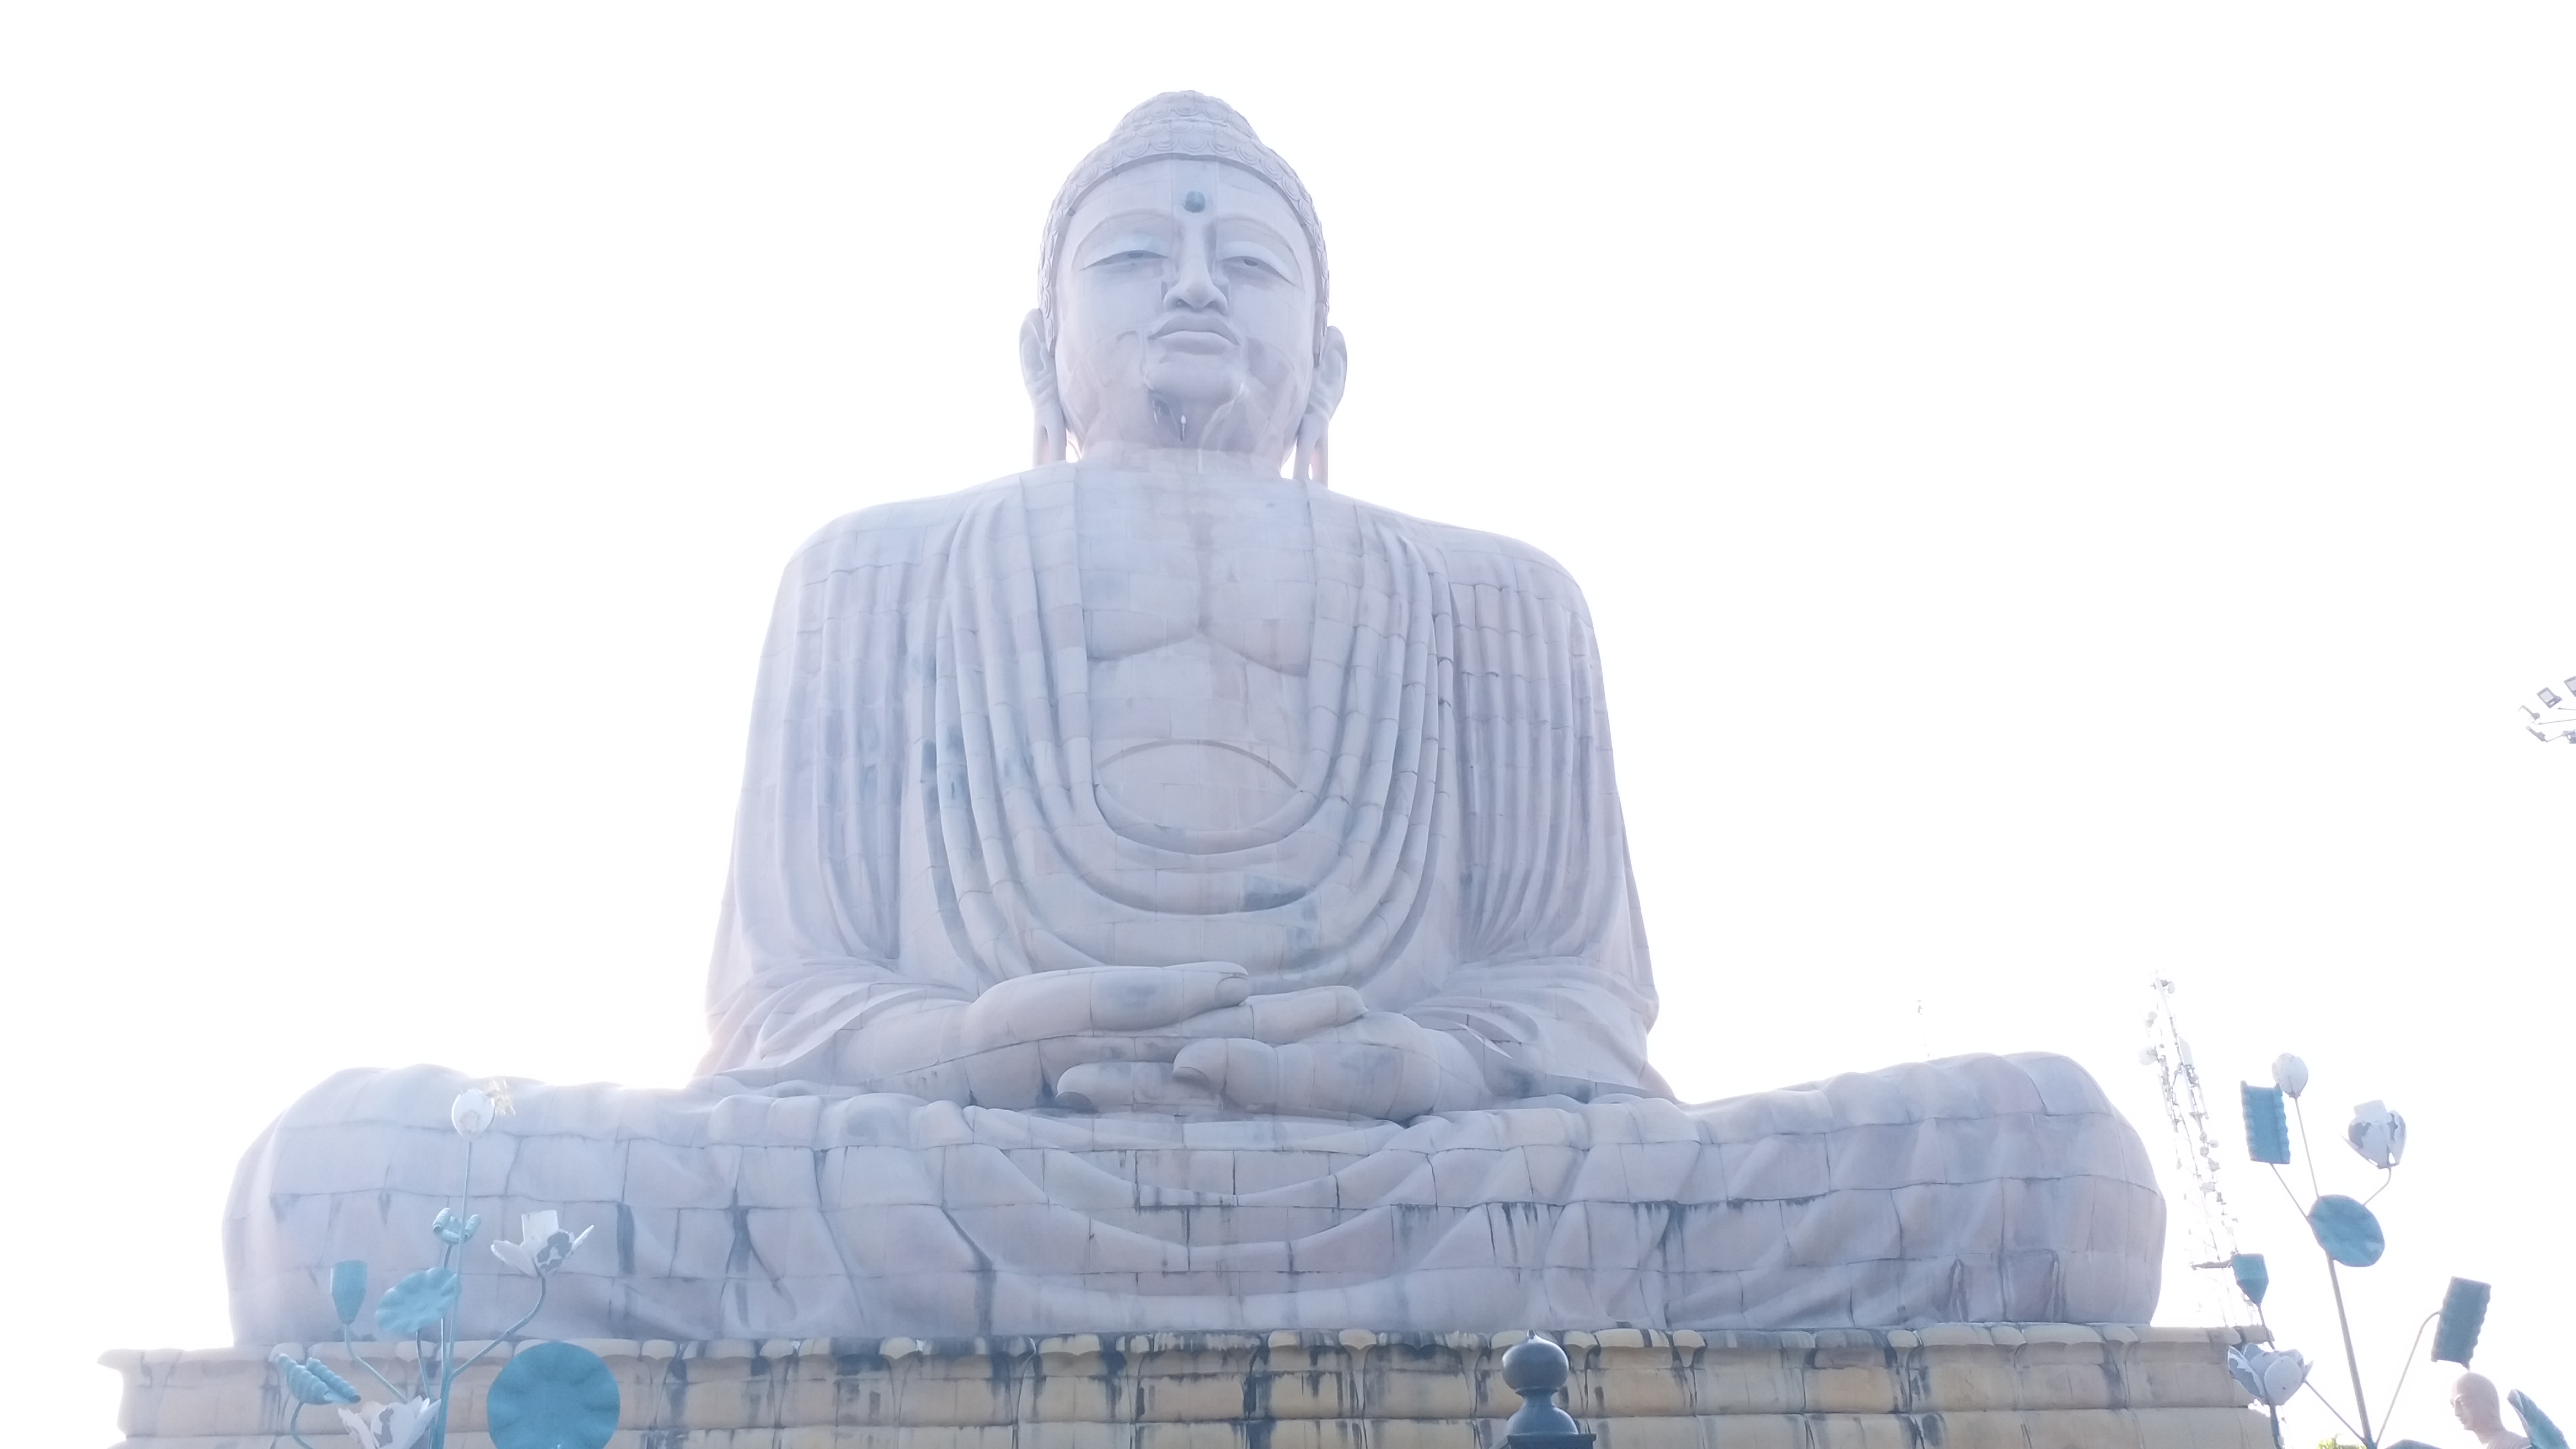  बुद्ध की विशाल प्रतिमा: 80 फीट की ऊंचाई पर खड़ी महान बुद्ध प्रतिमा बोधगया से जुड़े धार्मिक और आध्यात्मिक स्मारकों में से एक है. देश की सबसे ऊंची बुद्ध मूर्तियों में से एक प्रतिमा सन् 1989 में दलाई लामा के द्वारा स्थापित की गई थी. बौद्धों और हिंदुओं की तीर्थ यात्रा में विशालकाय बुद्ध प्रतिमा एक आवश्यक पड़ाव है. 80 फीट ऊंची इस प्रतिमा में भगवान बुद्ध ध्यान मुद्रा में है और खुली हवा में कमल के फूल पर विराजमान हैं. सात साल में 12,000 राज मिस्त्रियों ने इस खूबसूरत मूर्ति का निर्माण किया था. मूर्ति बलुआ पत्थर और लाल ग्रेनाइट के ब्लॉकों के मिश्रण से बनाई गई है.